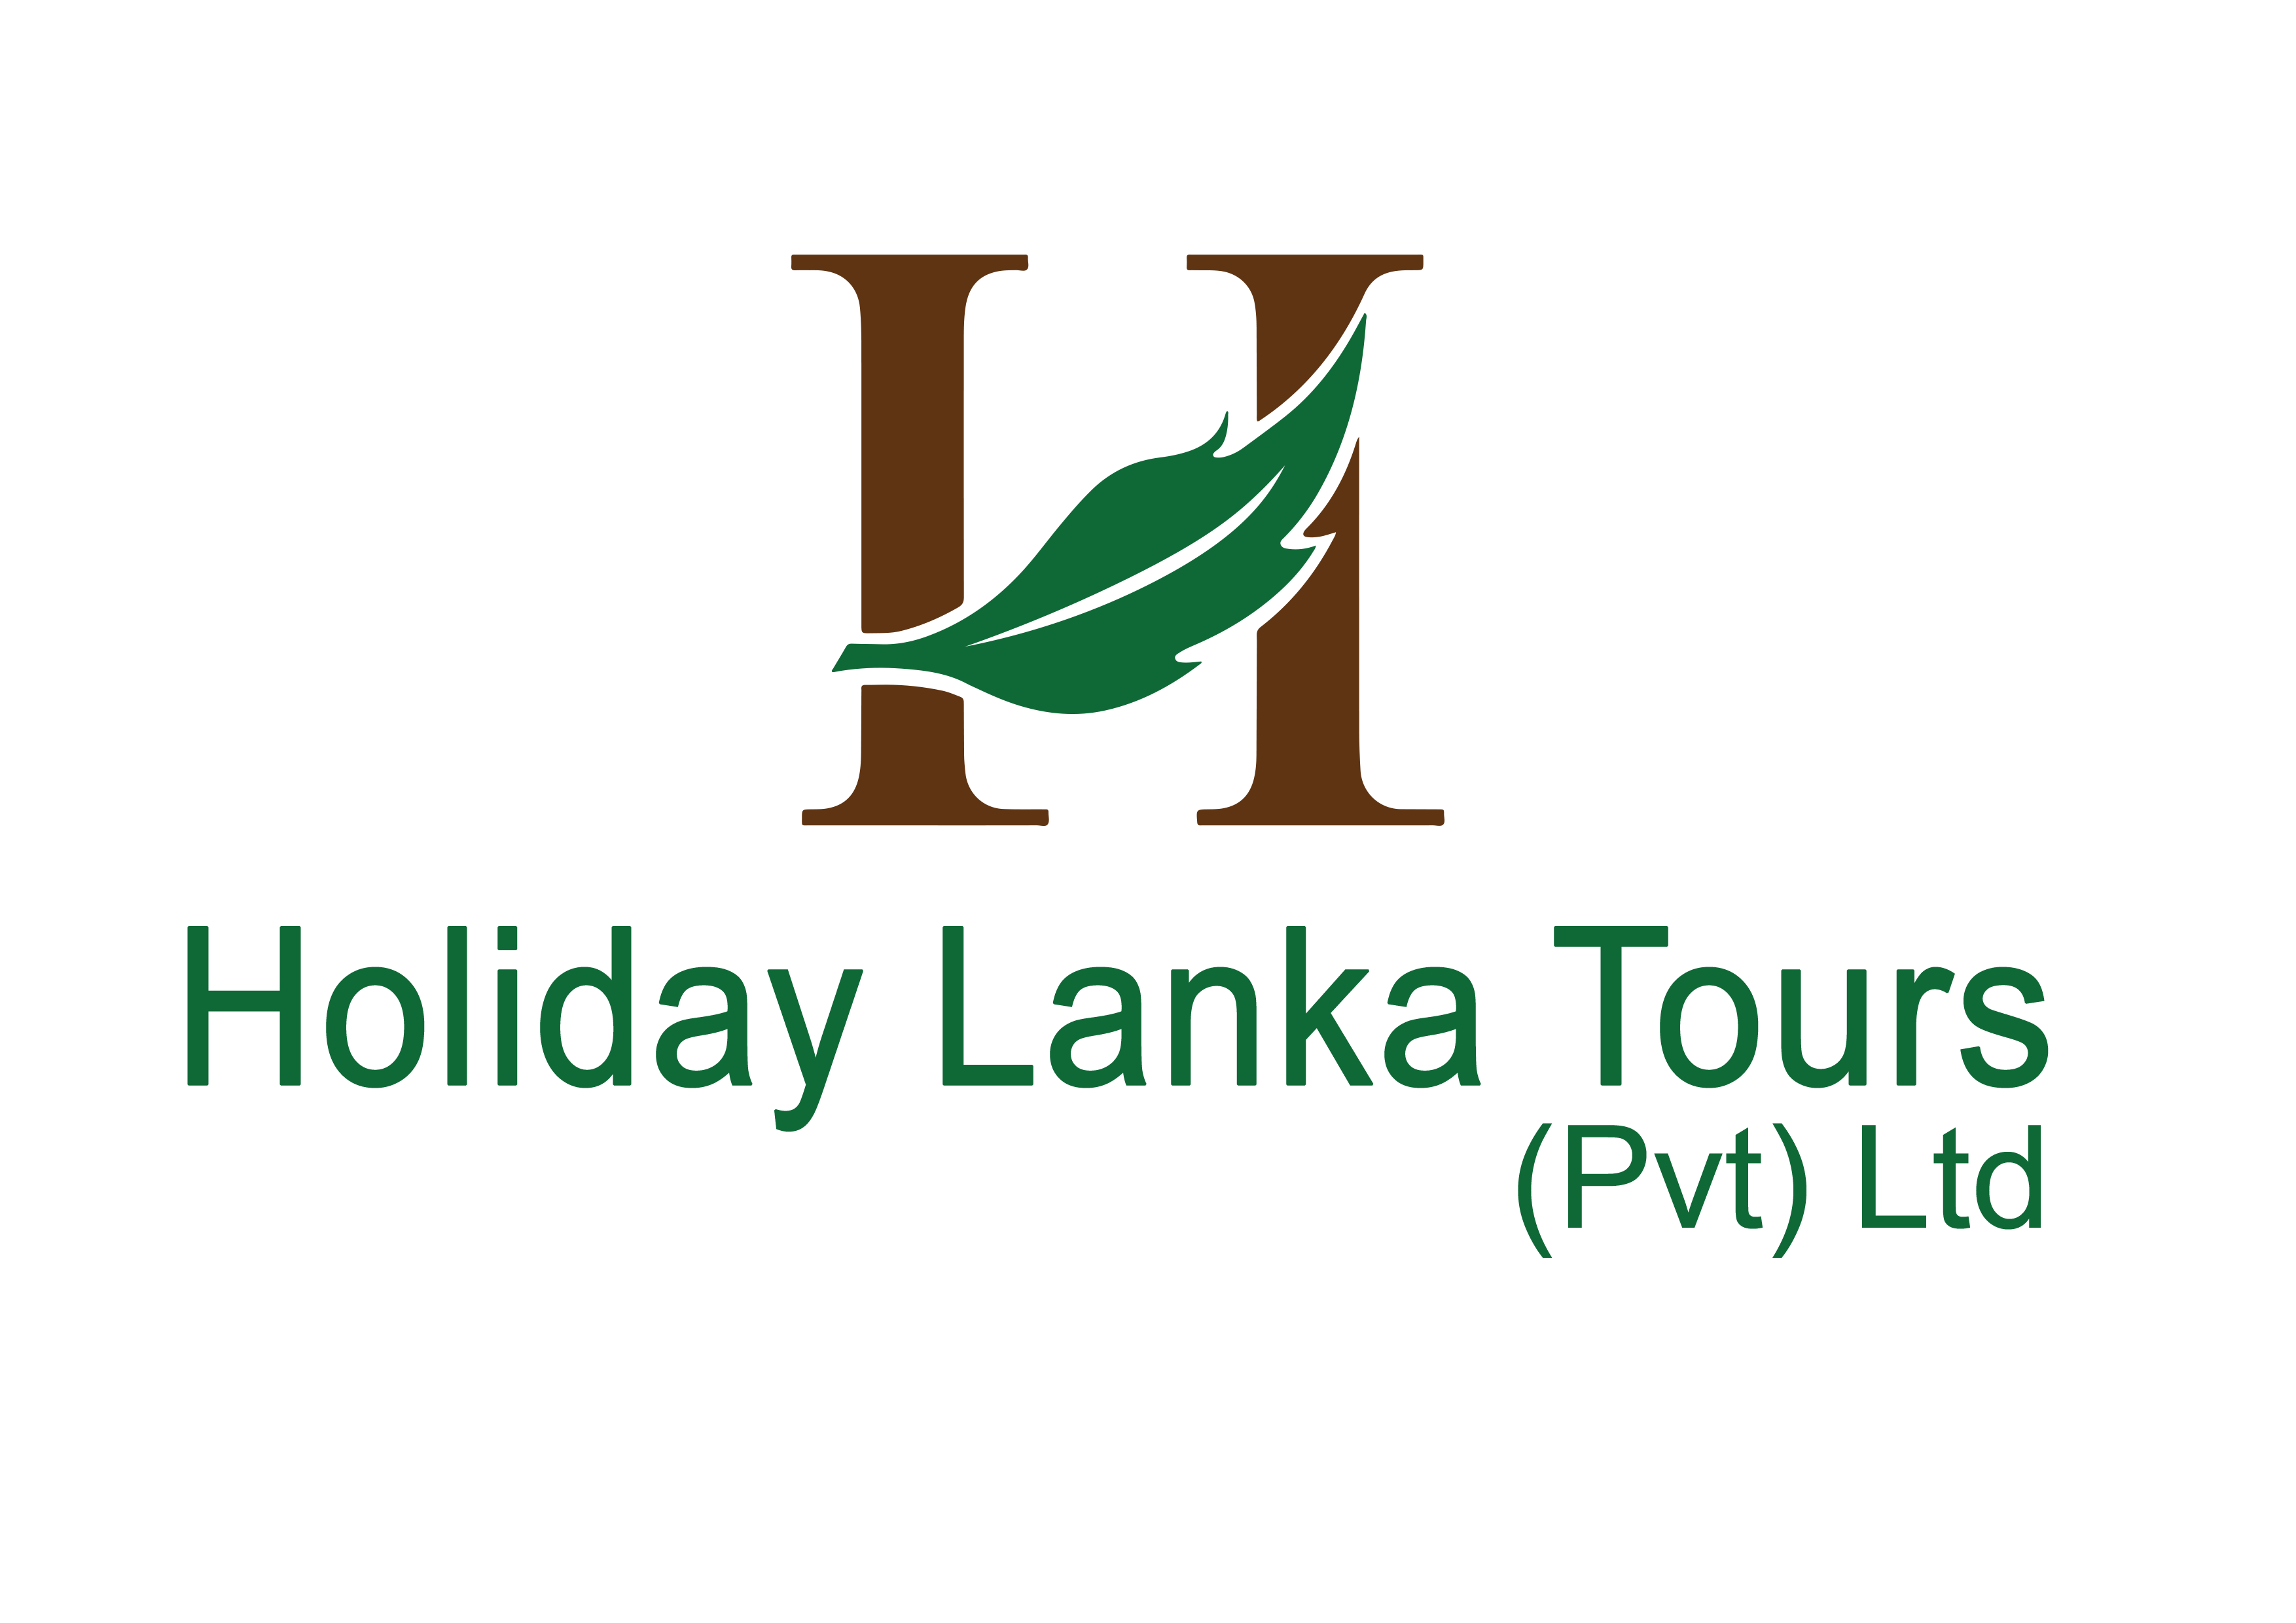 Holiday Lanka Tours